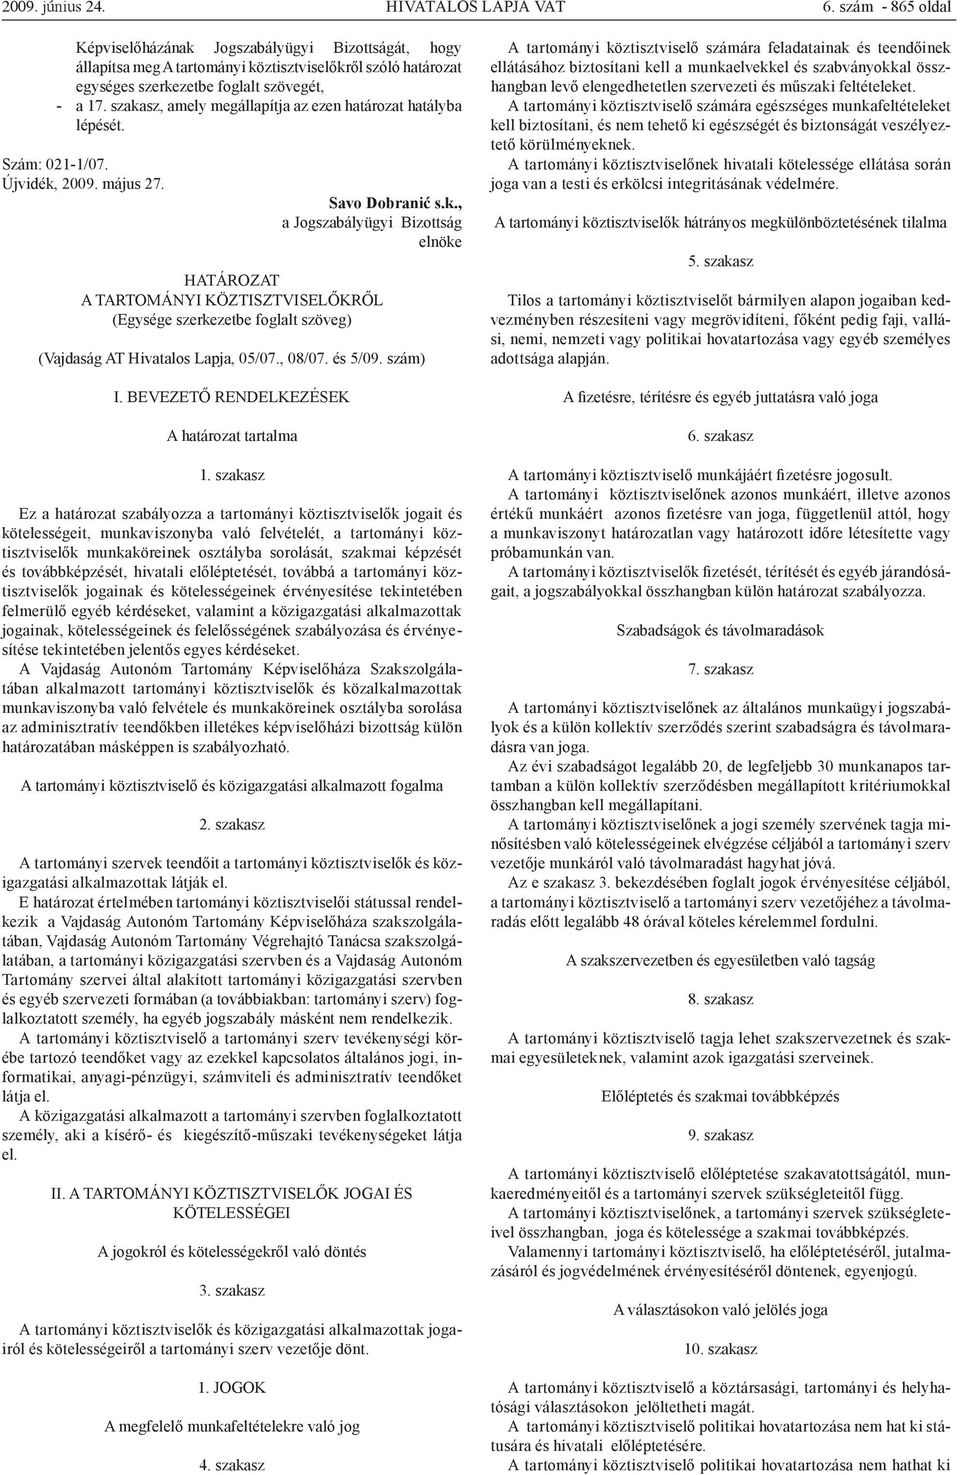 szakasz, amely megállapítja az ezen határozat hatályba lépését. Szám: 021-1/07. Újvidék, 2009. május 27. Savo Dobranić s.k., a Jogszabályügyi Bizottság elnöke HATÁROZAT A TARTOMÁNYI KÖZTISZTVISELŐKRŐL (Egysége szerkezetbe foglalt szöveg) (Vajdaság AT Hivatalos Lapja, 05/07.